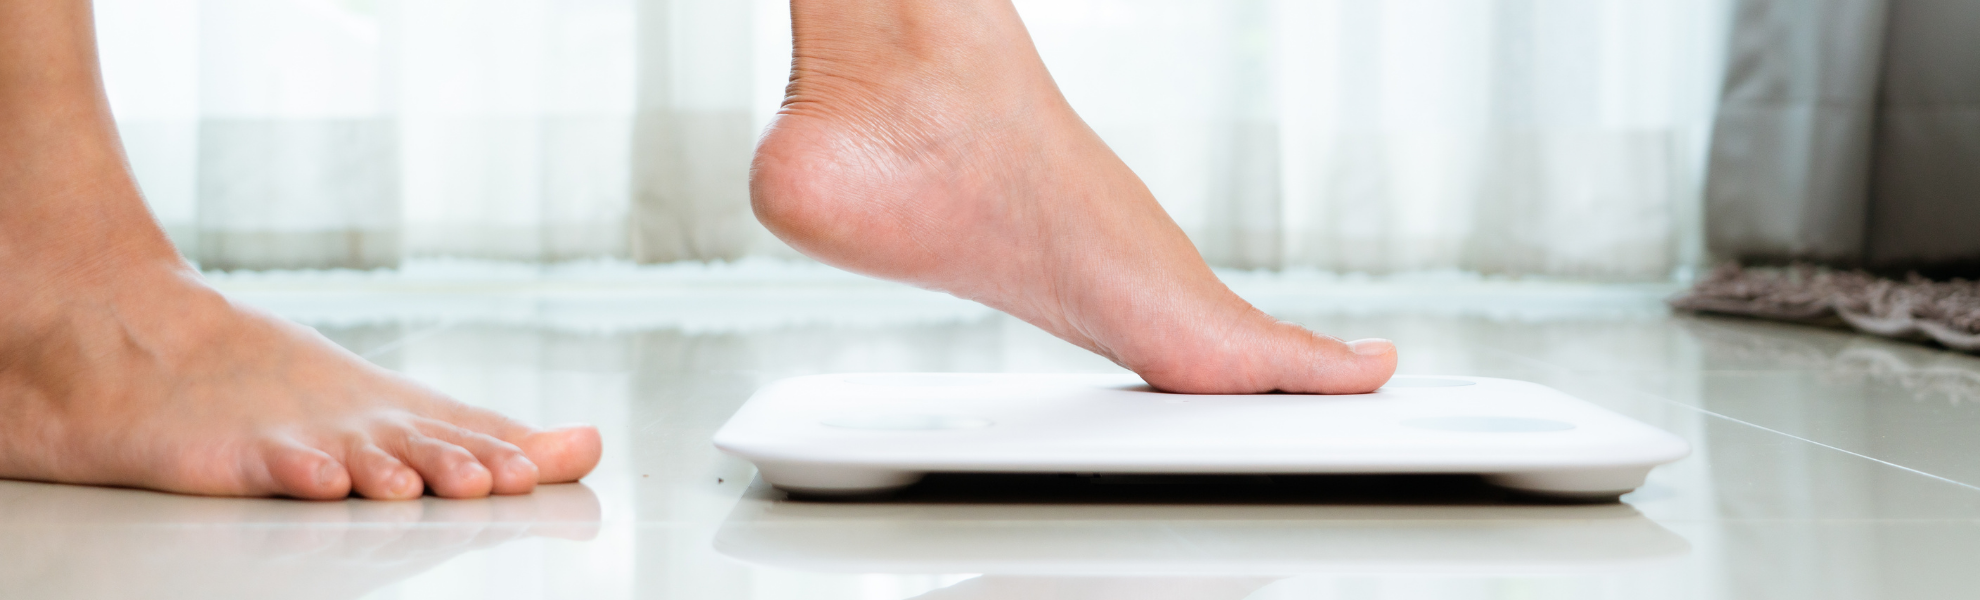 6 mitos sobre la obesidad y la pérdida de peso